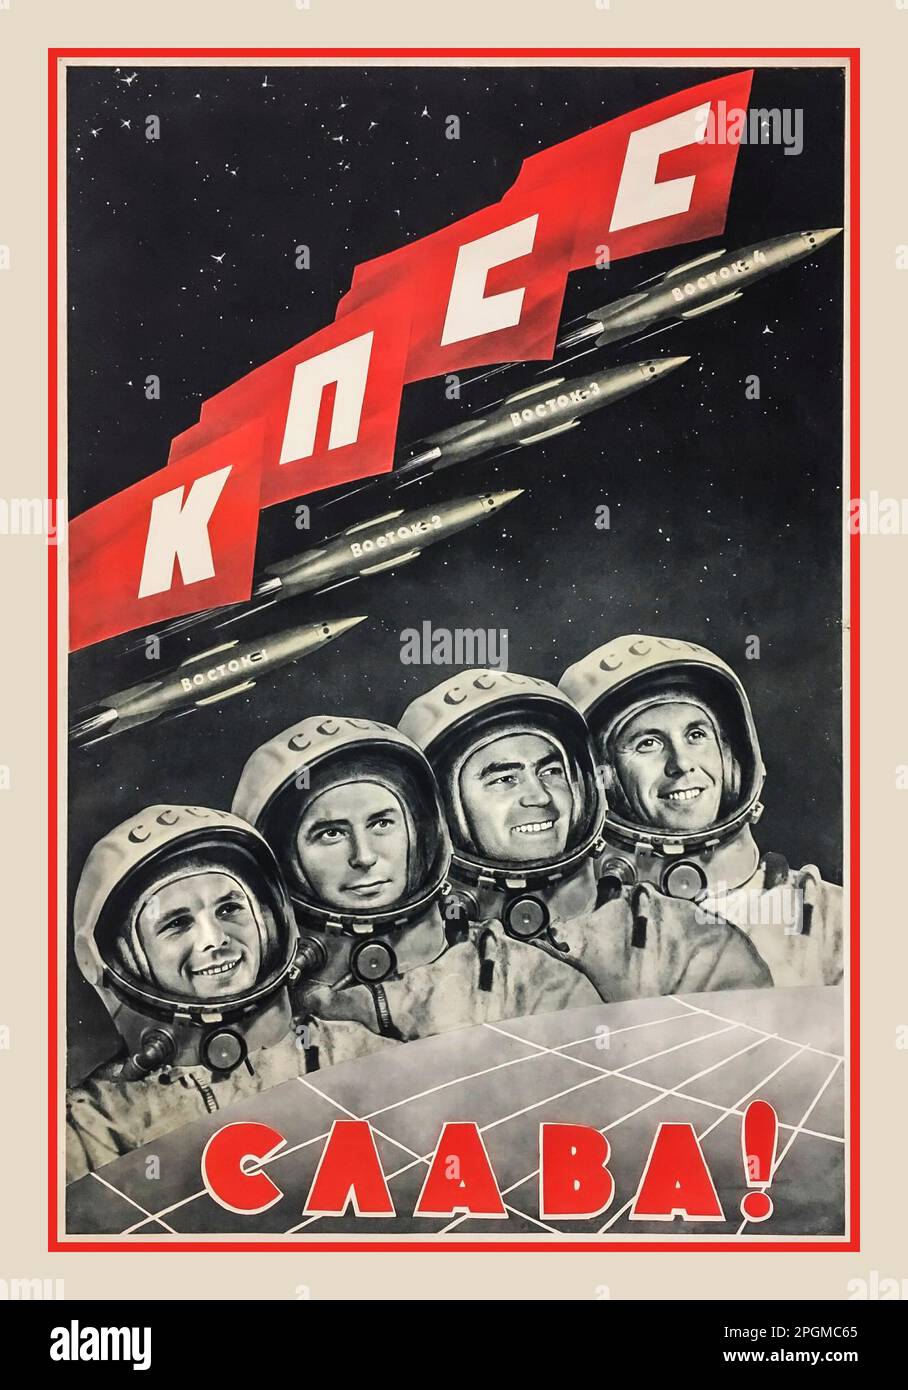 Der russische sowjetische Ruhm an die KPdSU der 1960er Jahre - sowjetische WELTRAUMPROPAGANDA. Vintage-sowjetisches Raumfahrtposter mit Porträts der ersten vier Kosmonauten mit Raumanzügen. Von links nach rechts Juri Gagarin, Gherman Titow, Andriyan Nikolajew und Pawel Popowitsch. Es heißt: "Ruhm an die Kommunistische Partei der Sowjetunion. Die Raketen zeigten Boctok 1, 2,3 und 4 Stockfoto